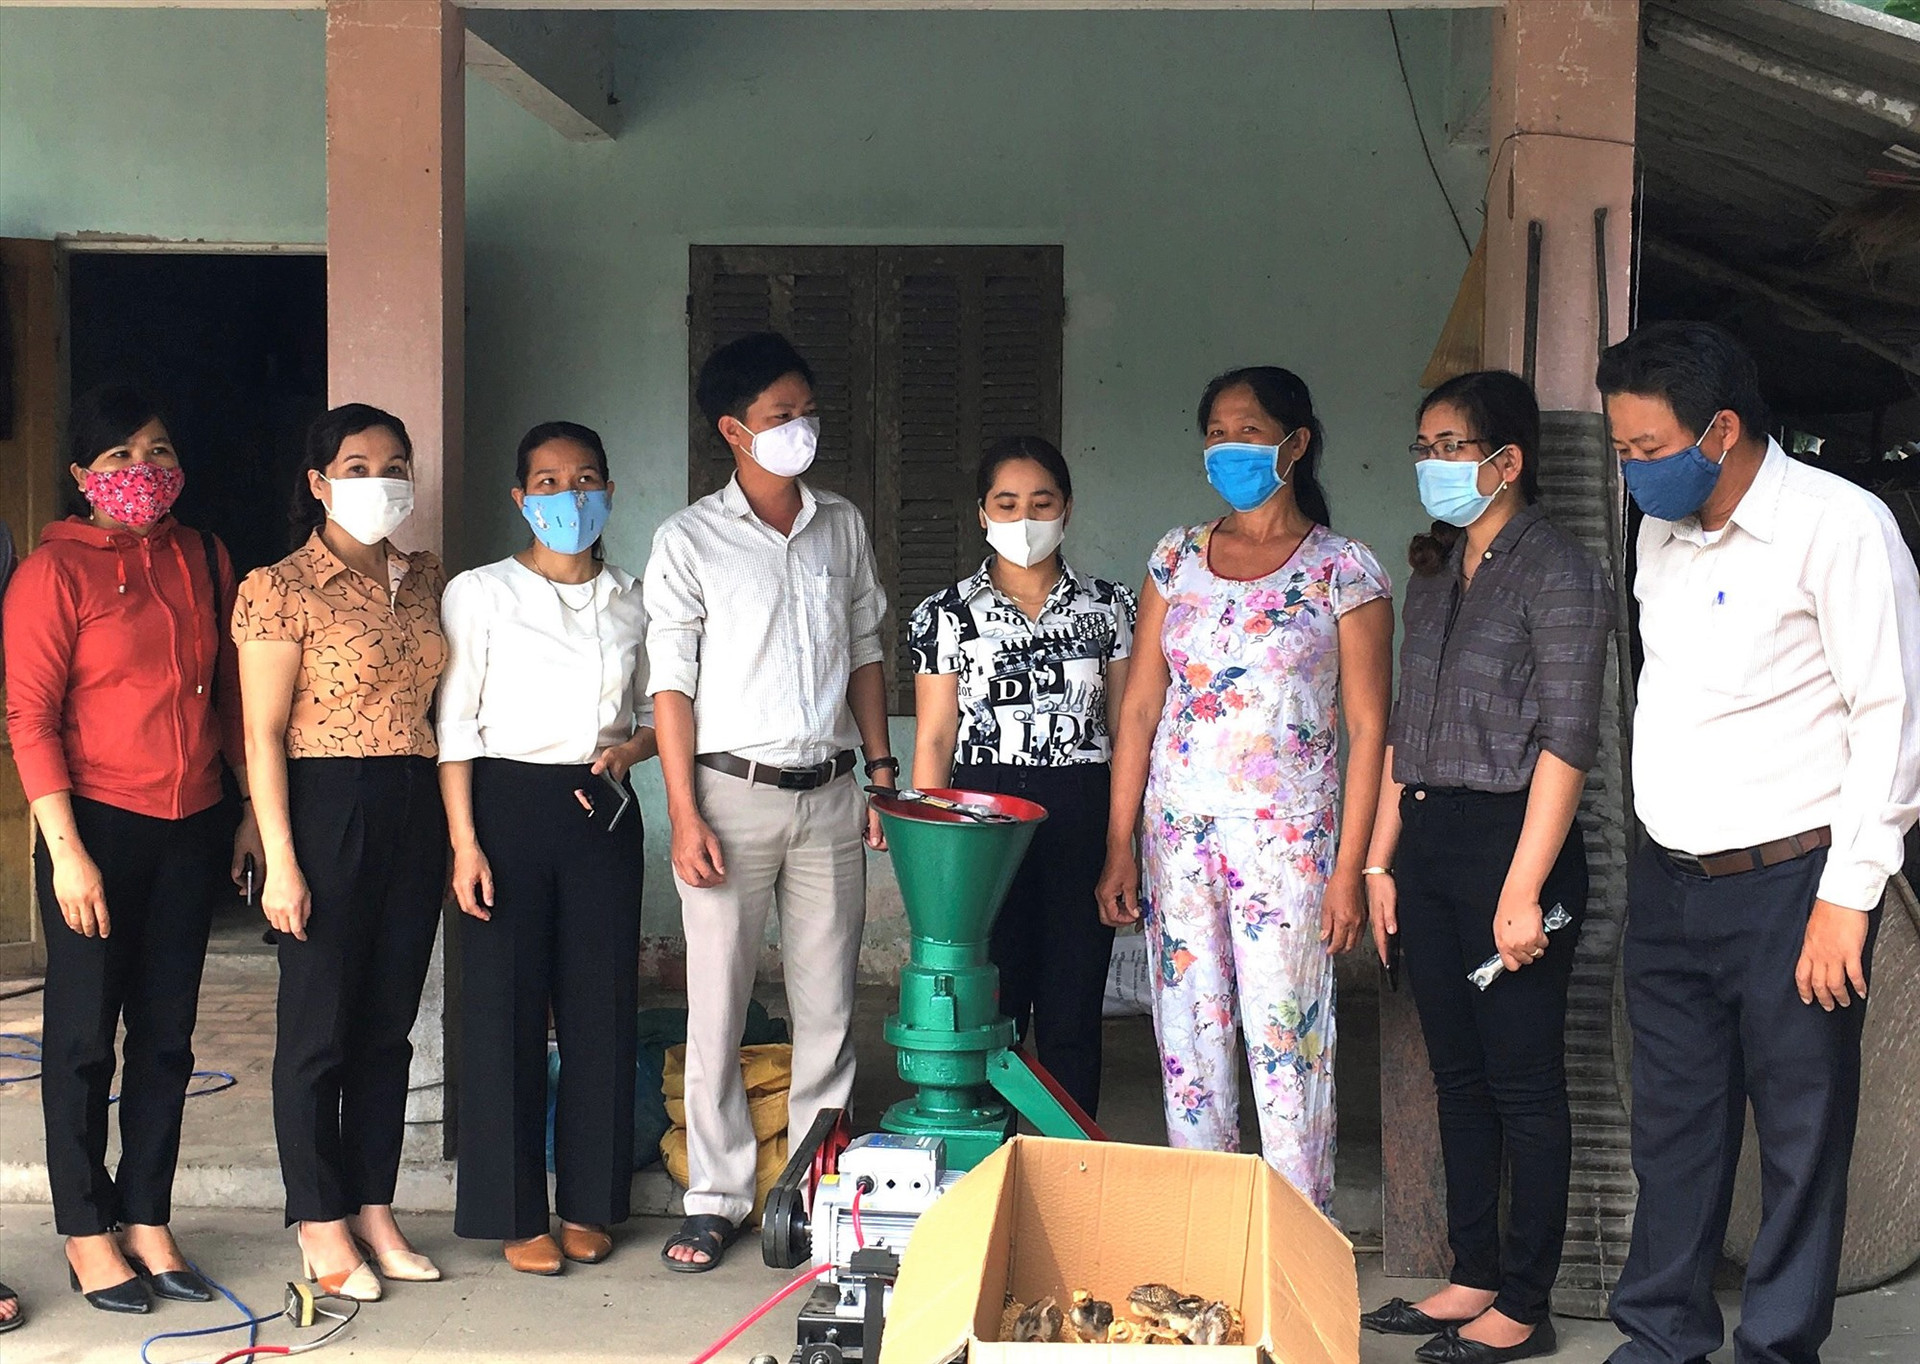 Phong trào đồng hành, giúp đỡ hộ nghèo ở Phú Ninh nhận được sự hưởng ứng của cả hệ thống chính trị và cộng đồng xã hội. Ảnh: CTV